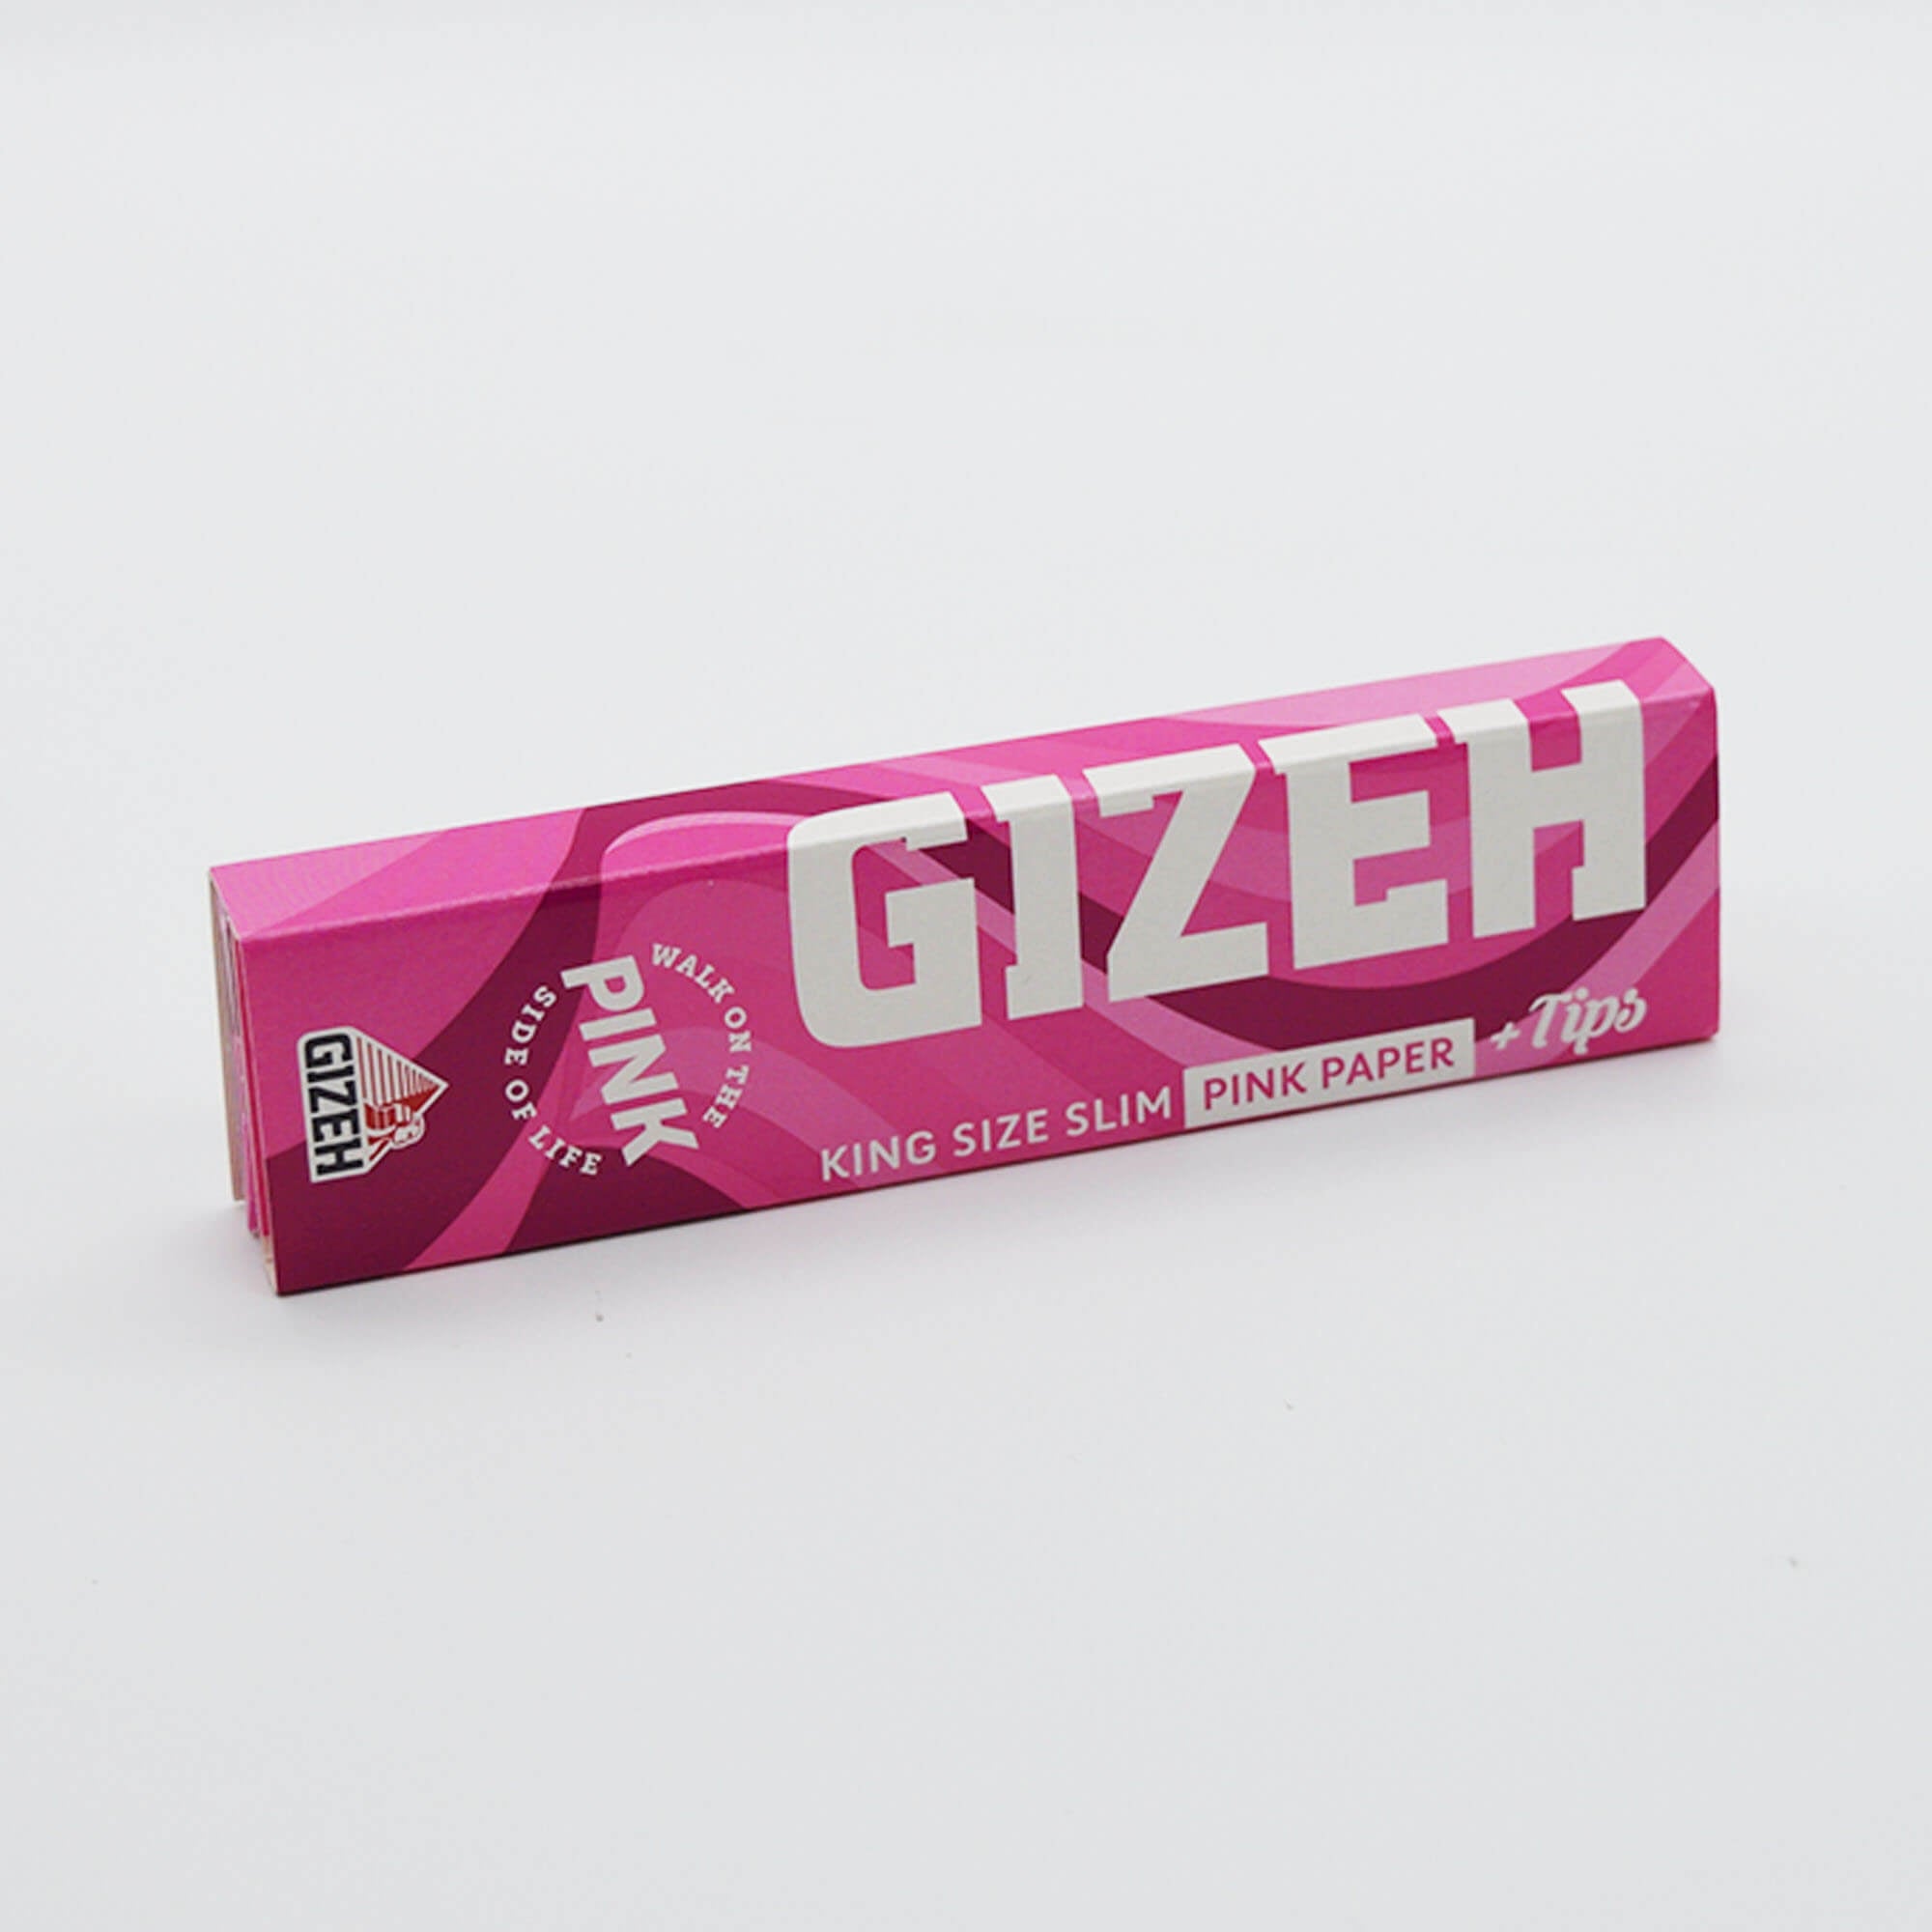 Gizeh King Size Slim Longpapers + Tips - Smokerhontas